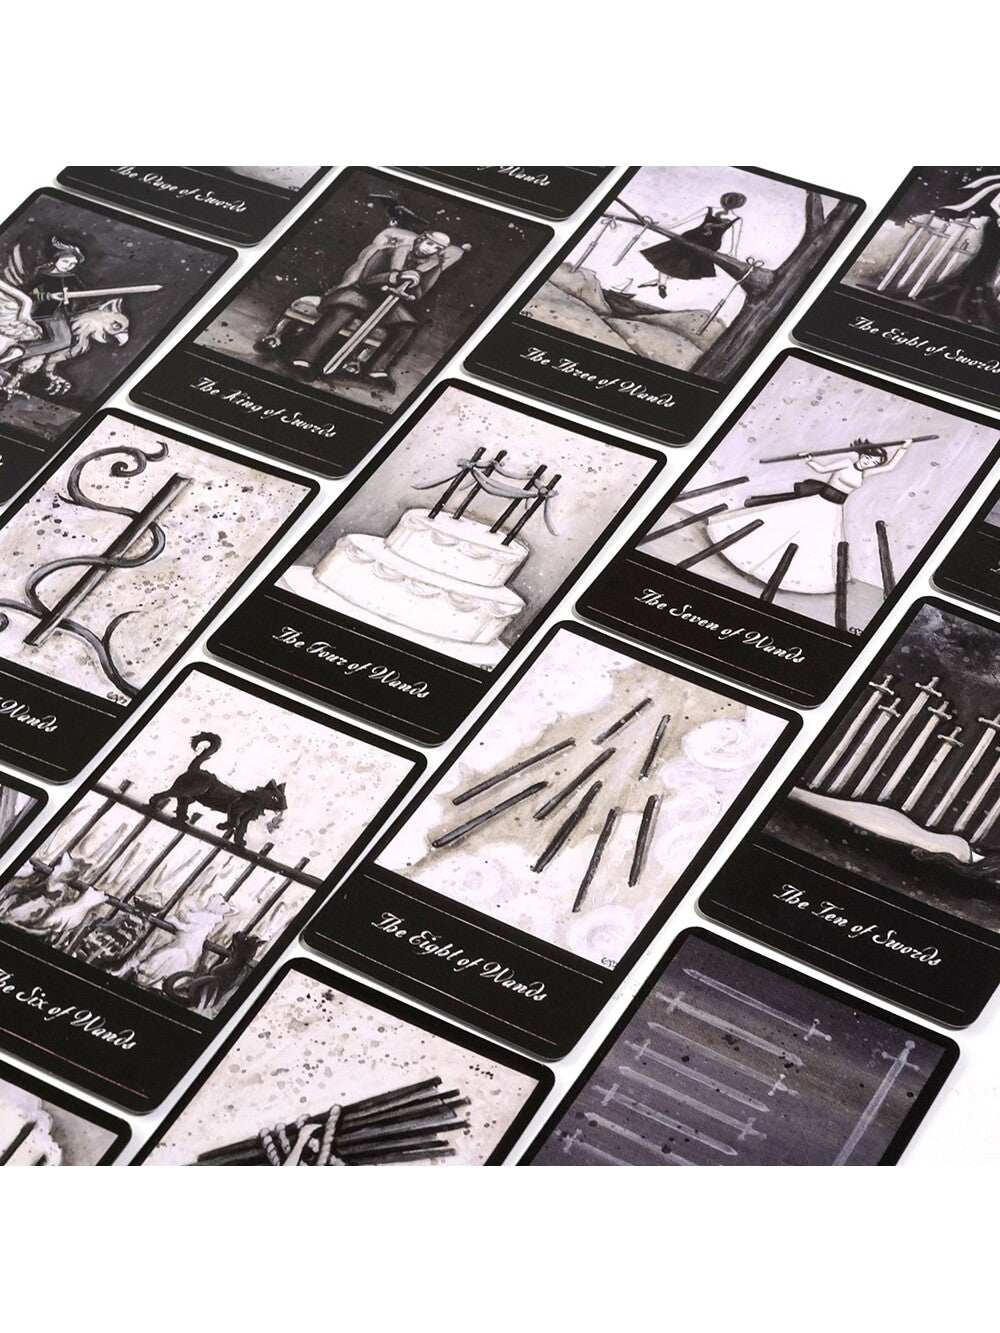 The Phantomwise Tarot Deck 78 cartas en estilo retro vintage en blanco y negro